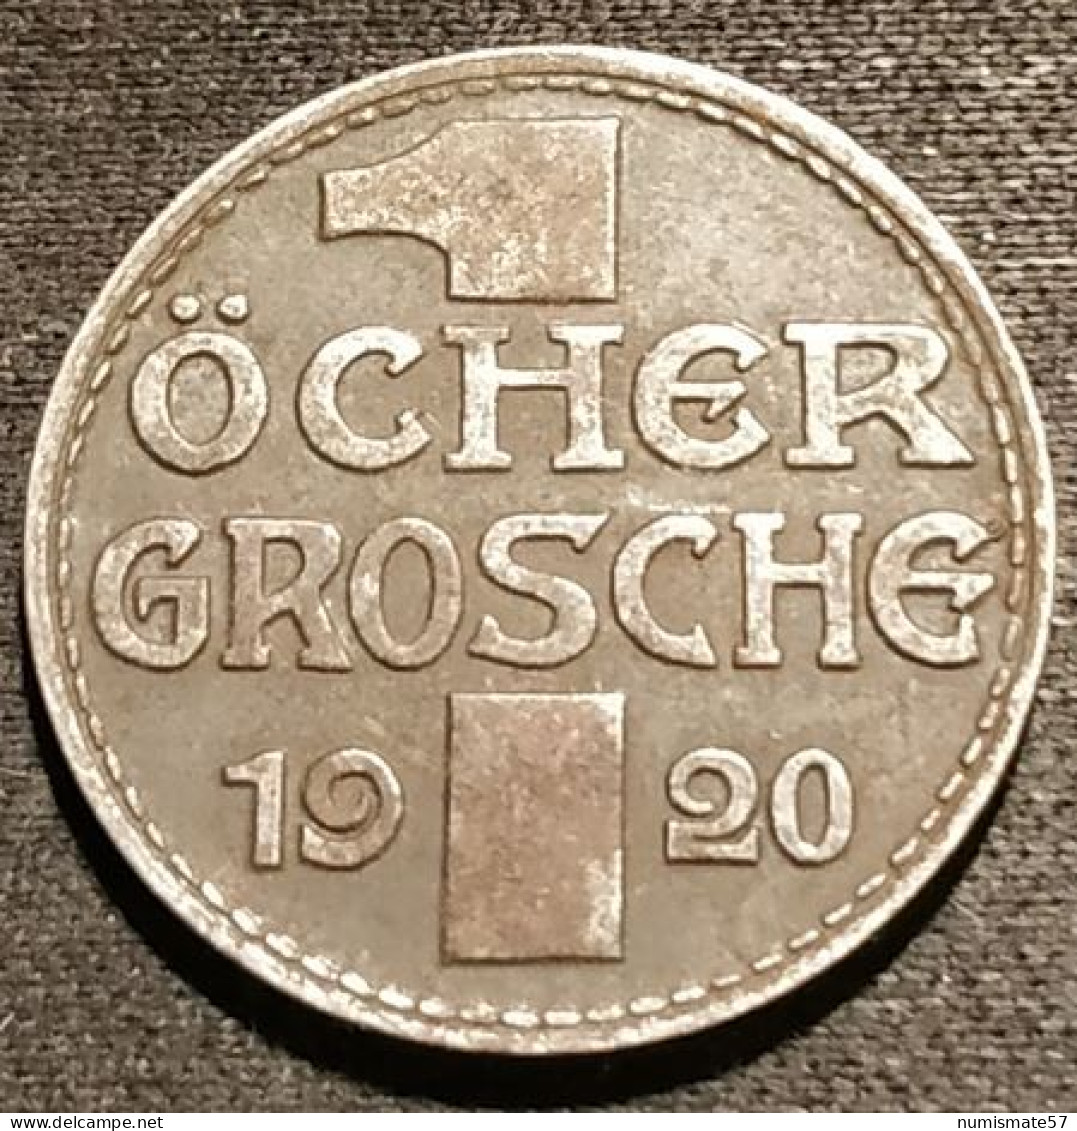 ALLEMAGNE - GERMANY - 1 Öcher Grosche 1920 - ( 10 Pfennig Aachen ) - Funck# 1.5 - Monetary/Of Necessity